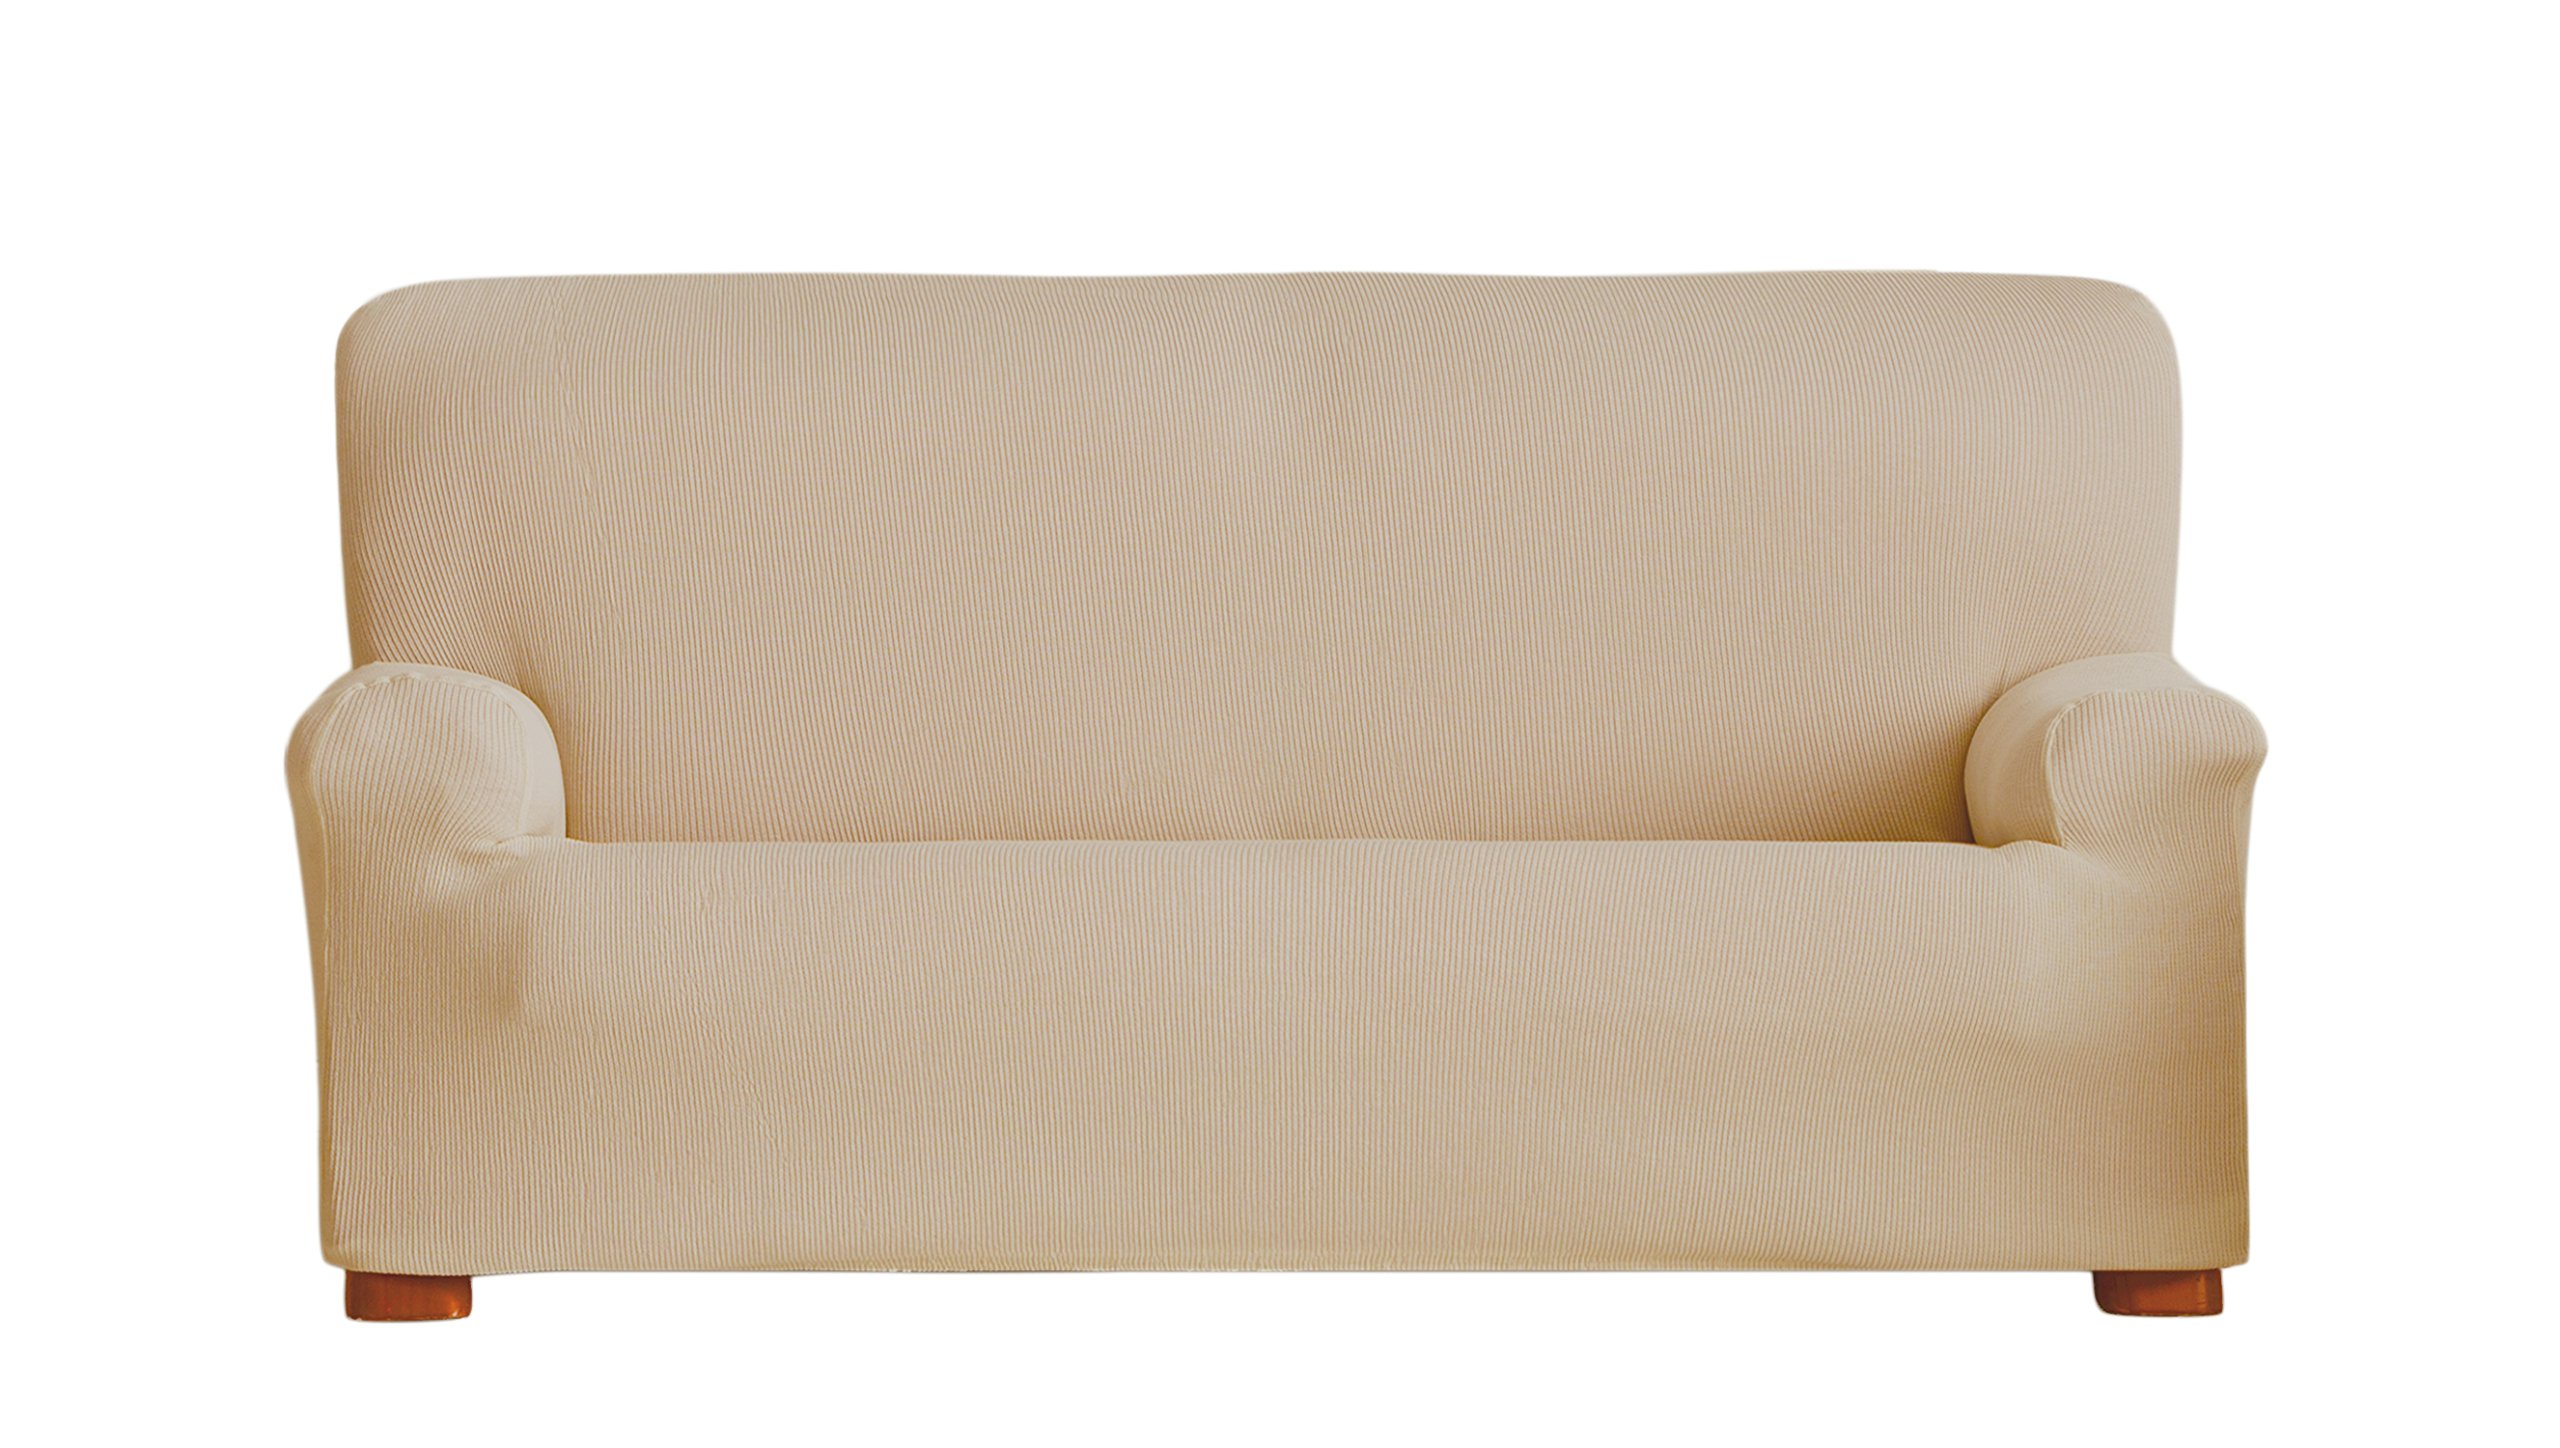 Eysa Ulises elastisch Sofa überwurf 2 sitzer, Polyester-Baumwolle, 01-beige, 37 x 7 x 29 cm